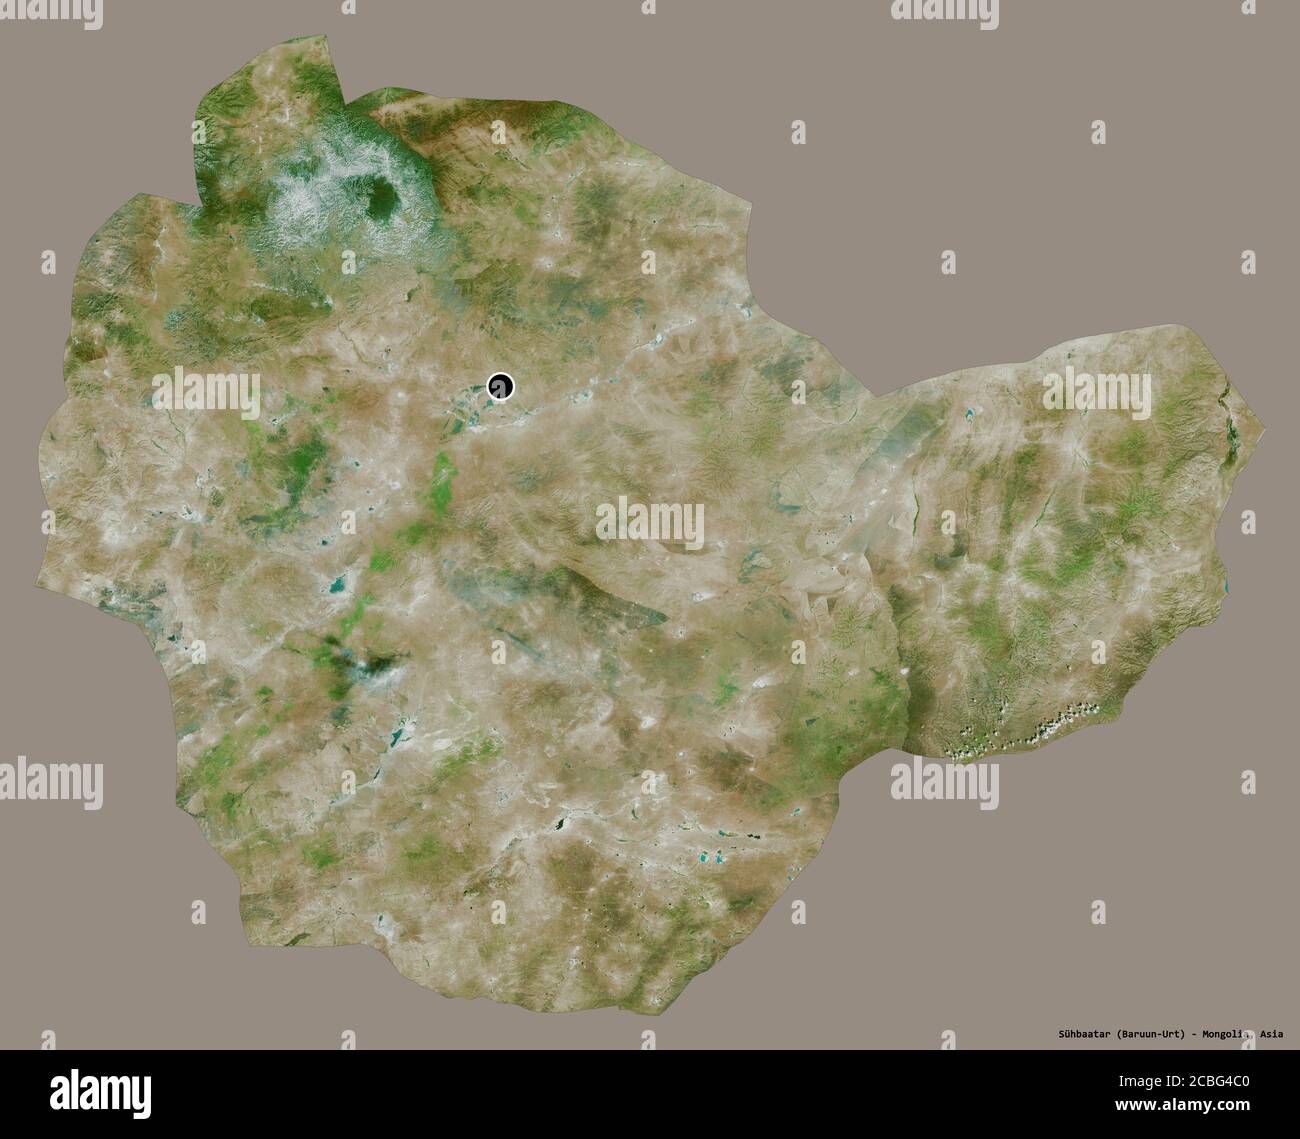 Forme de Sühbaatar, province de Mongolie, avec sa capitale isolée sur un fond de couleur unie. Imagerie satellite. Rendu 3D Banque D'Images